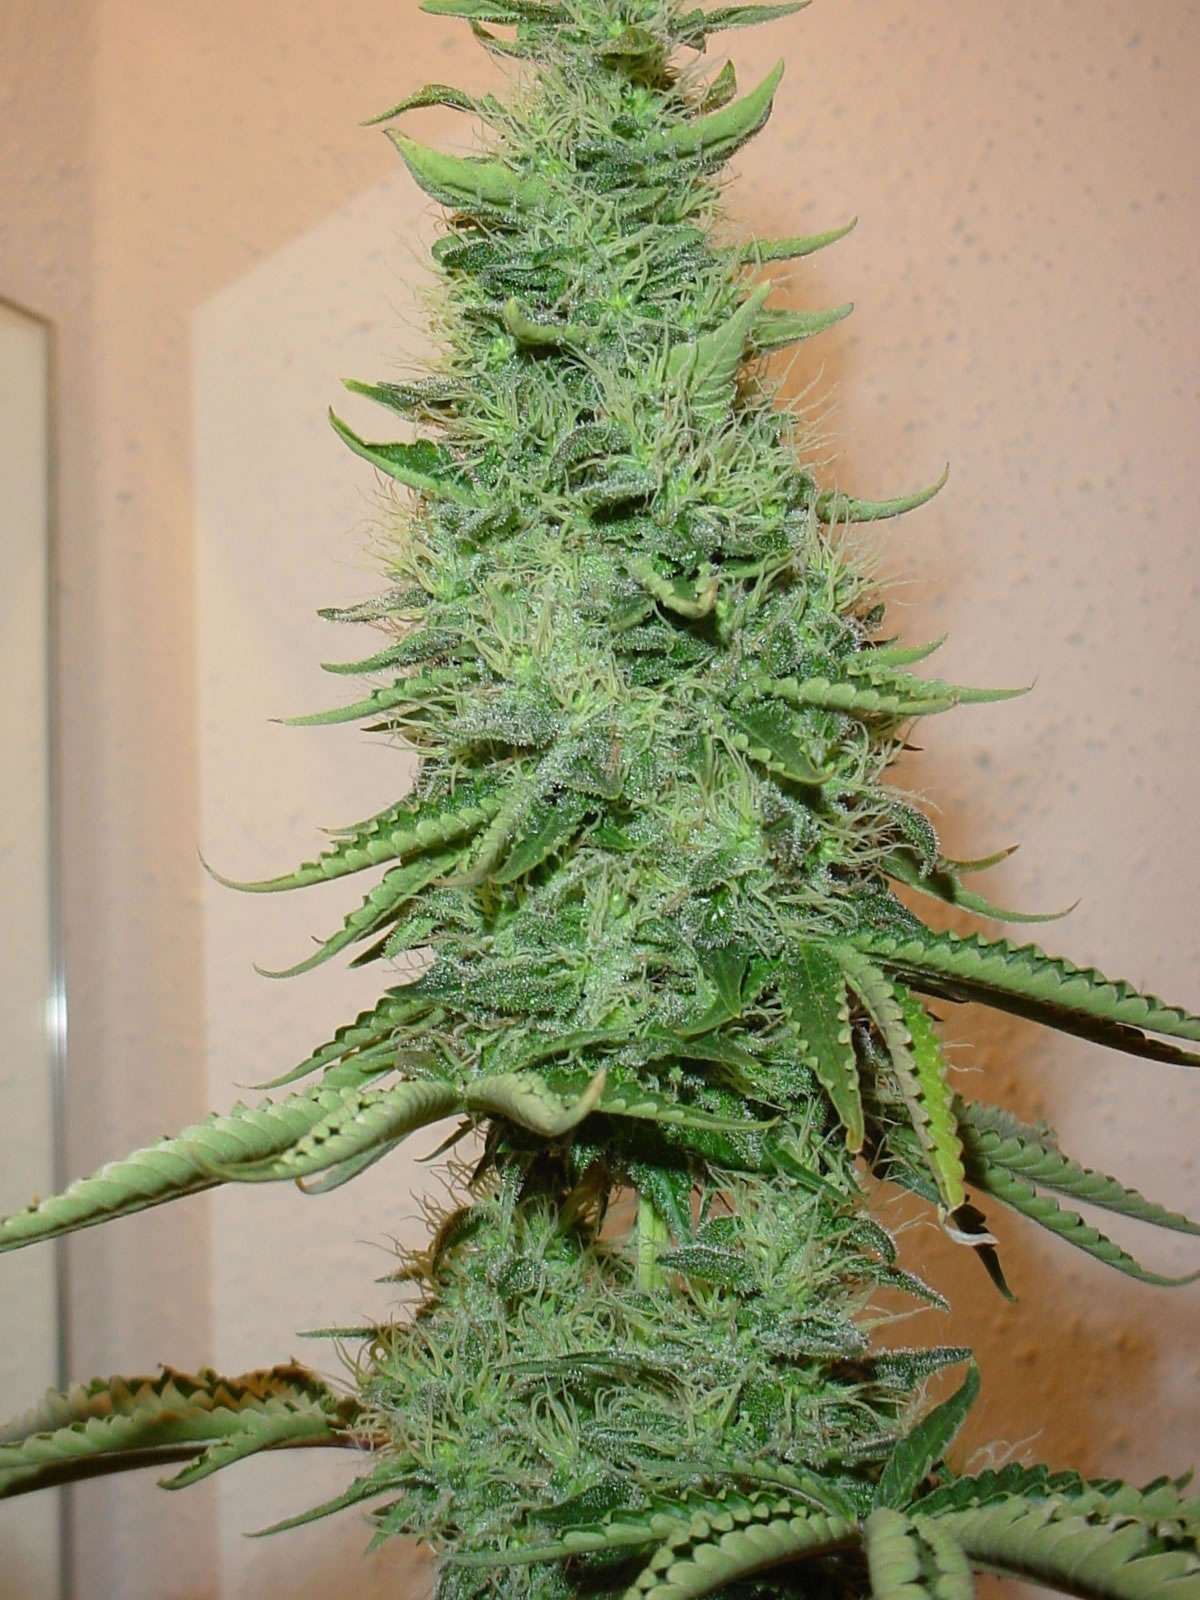 http://2.bp.blogspot.com/_Ykpc6yB8JCk/TG1OFI9mb3I/AAAAAAAAANQ/edk0lWkDX4E/s1600/big_bud_marijuana.jpg